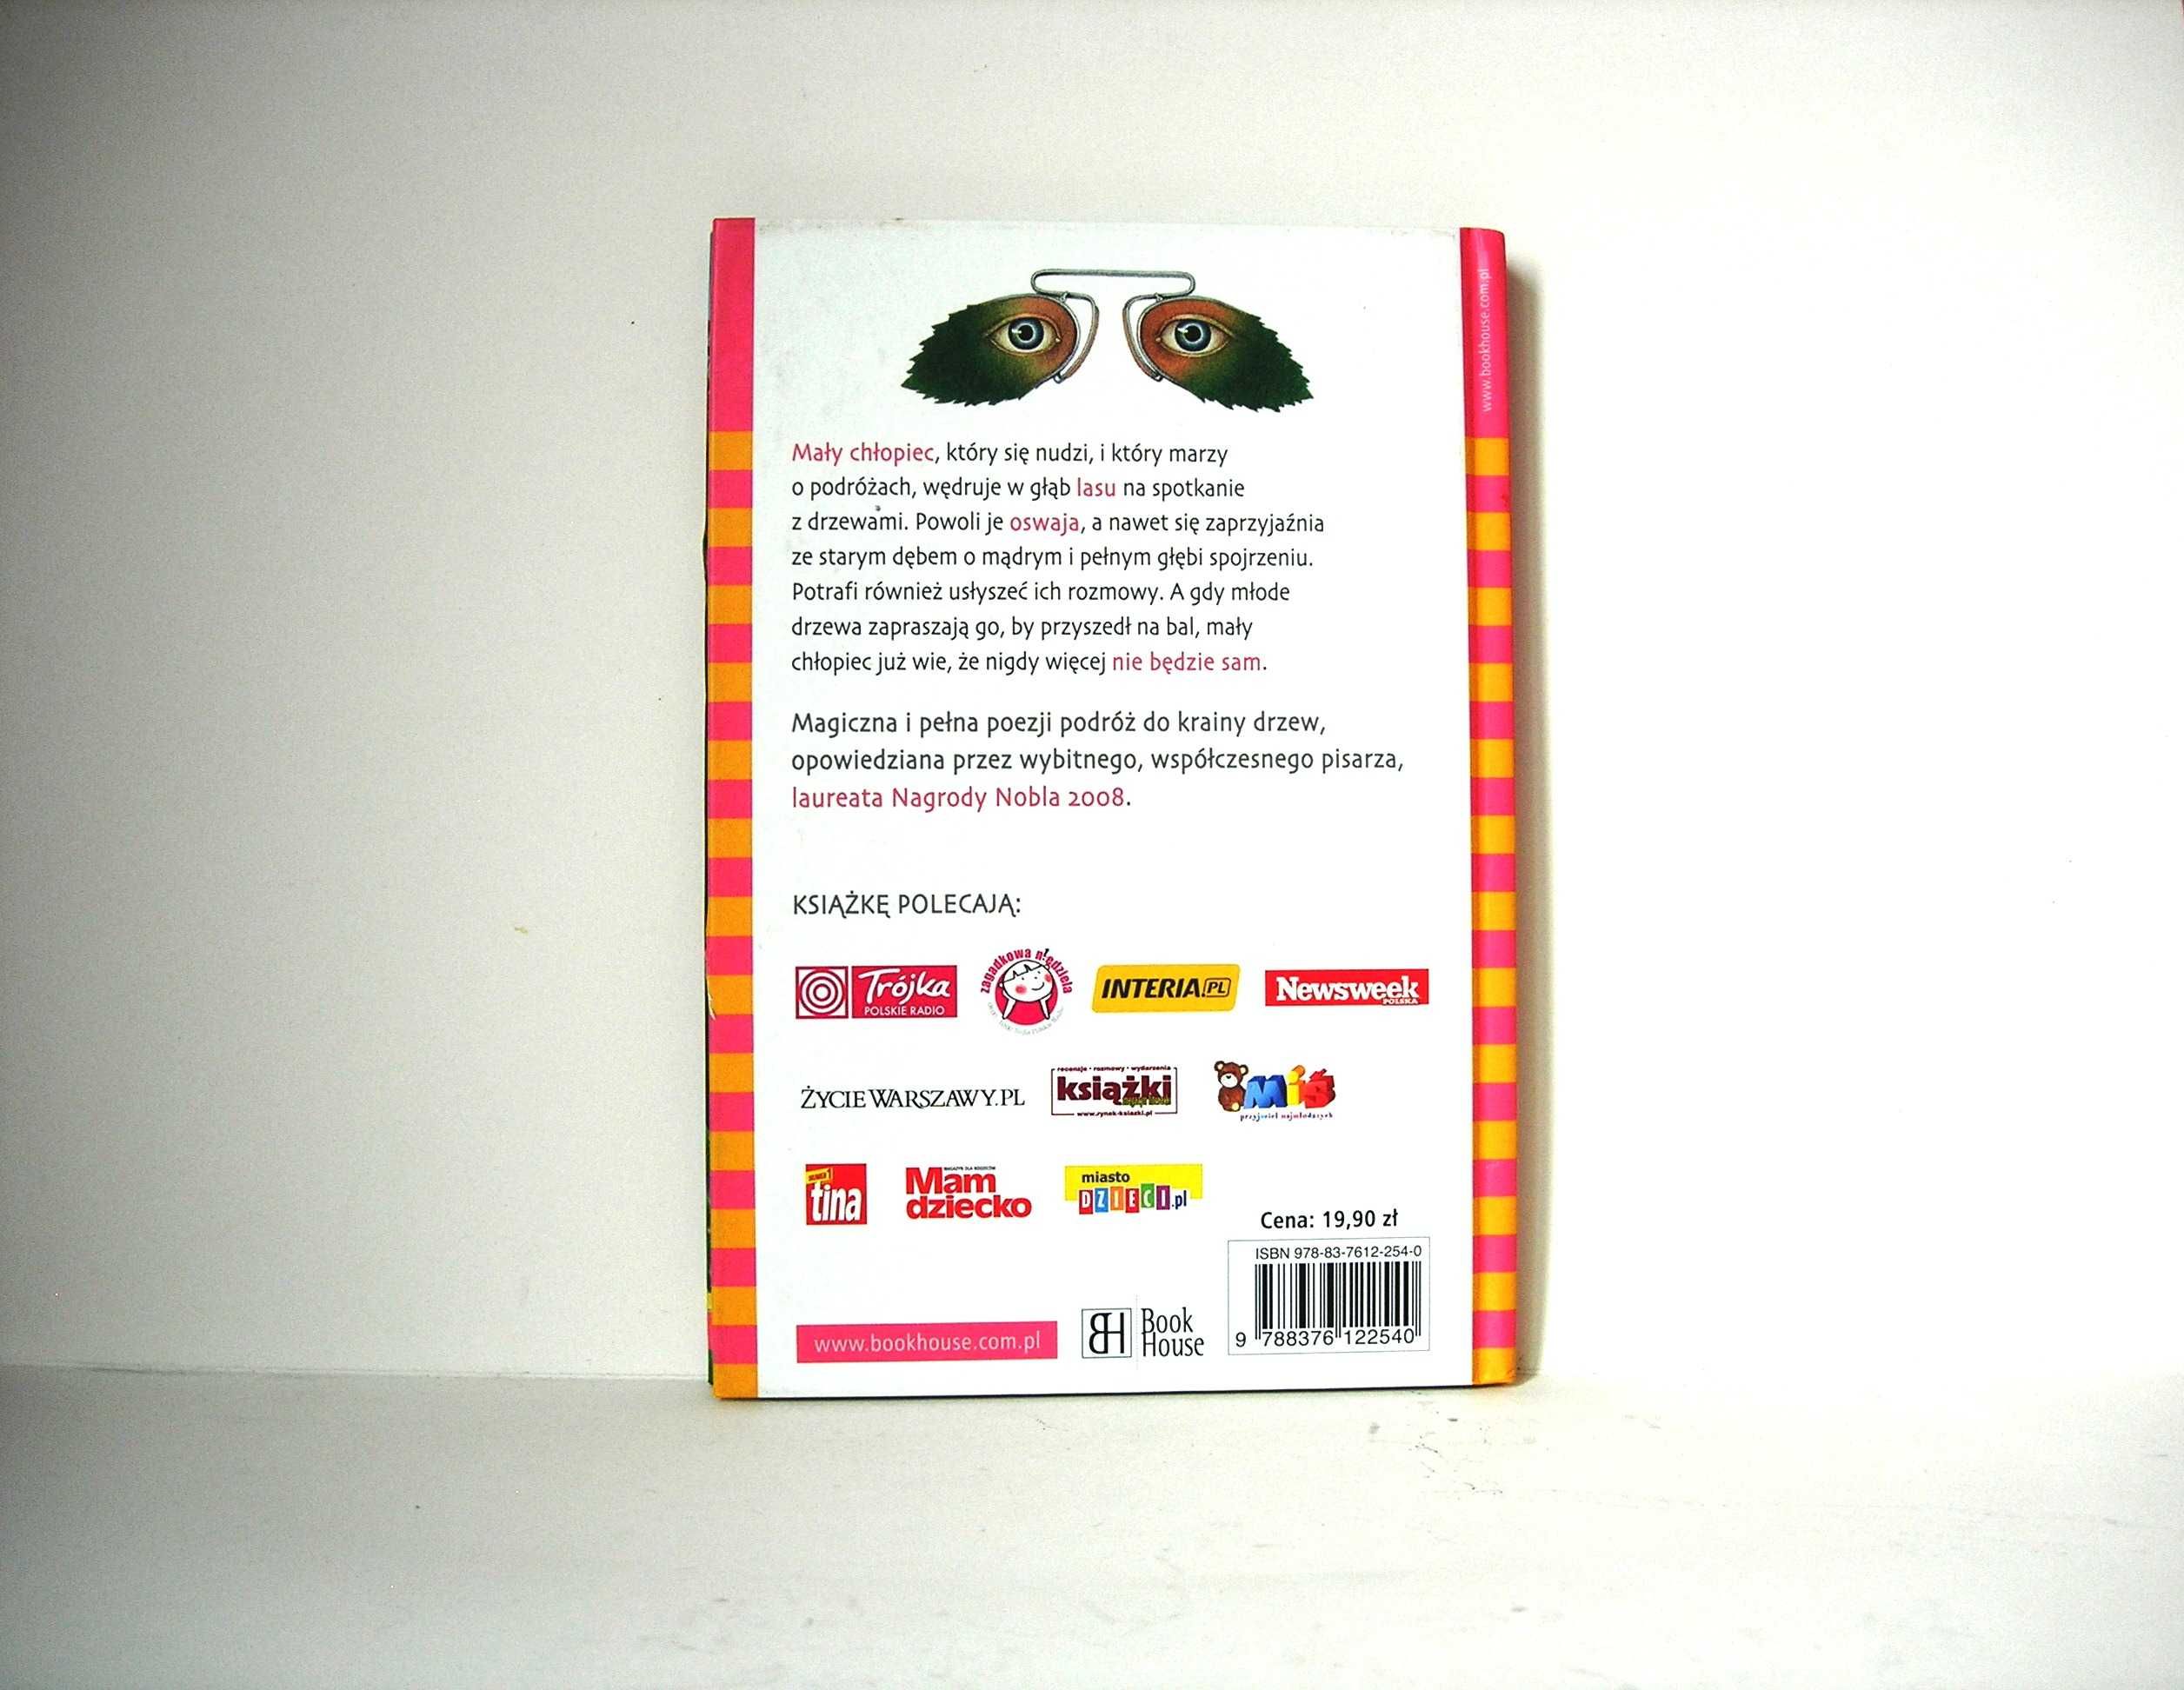 "Podróż do krainy drzew" J.M.G. Le Clézio wyd. Book House 2009